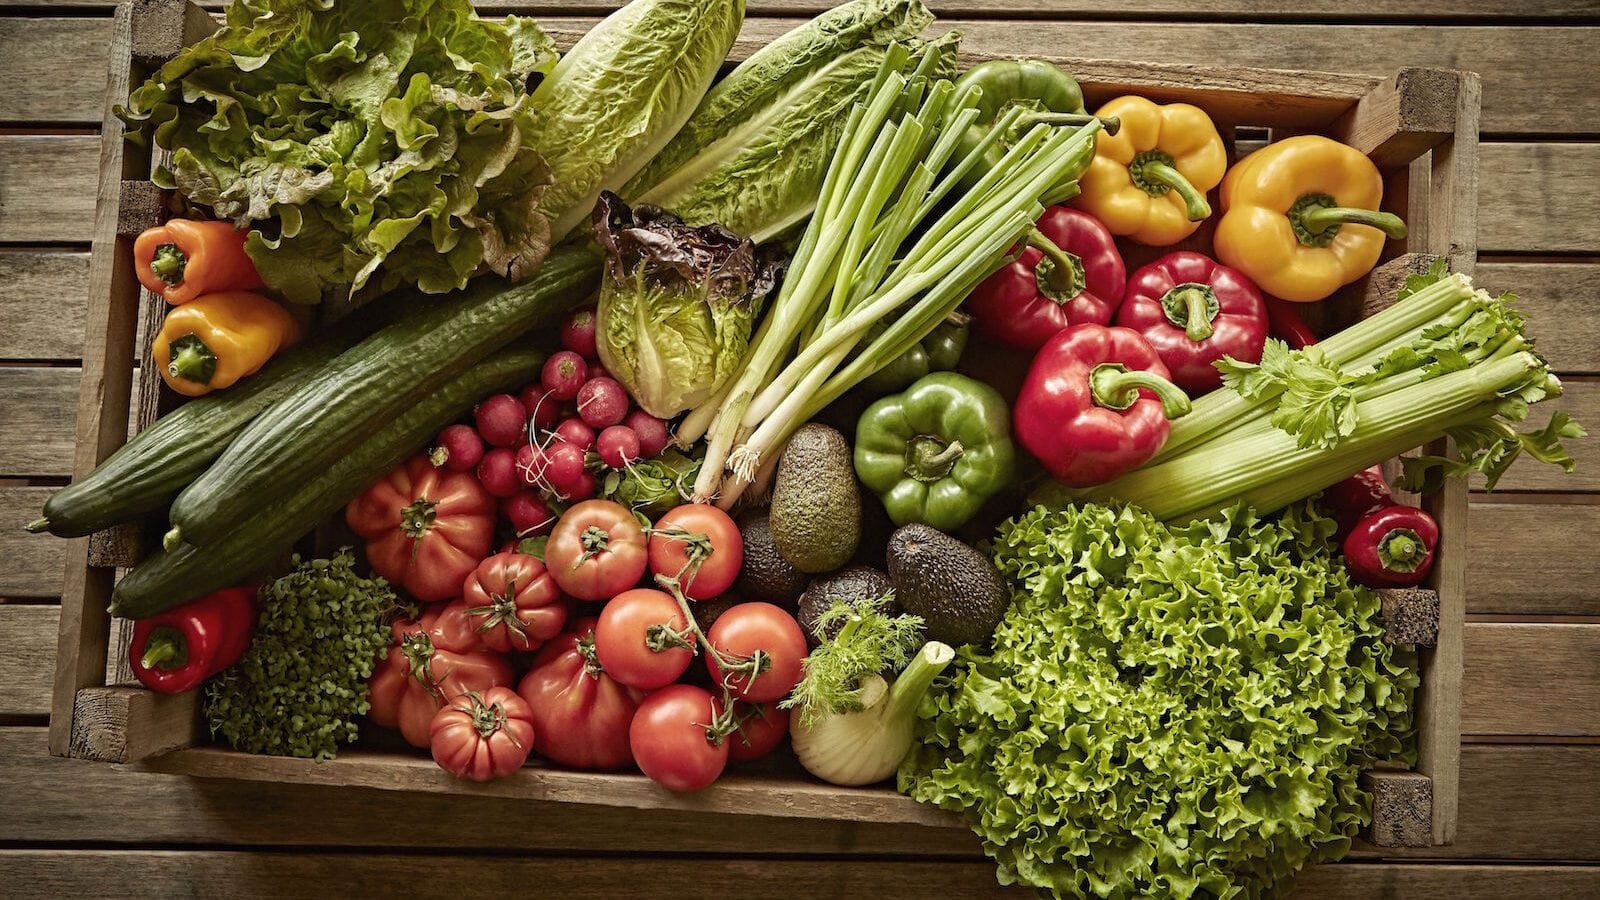 Billede af grøntsager i kasse - find de bedste måltidskasser her